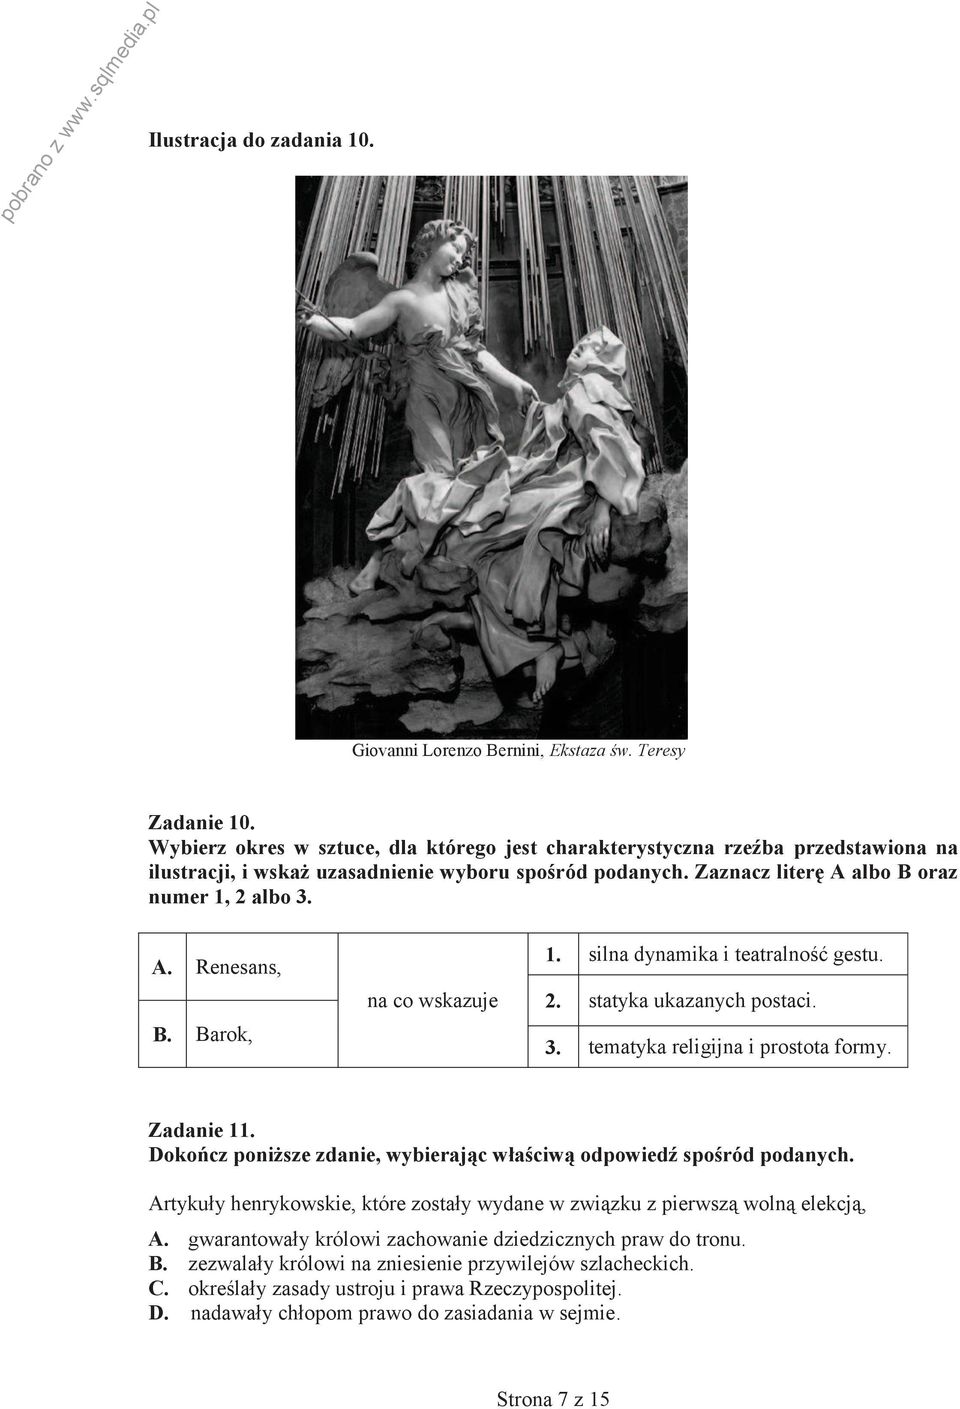 A. Renesans, B. Barok, na co wskazuje 1. silna dynamika i teatralność gestu. 2. statyka ukazanych postaci. 3. tematyka religijna i prostota formy. Zadanie 11.